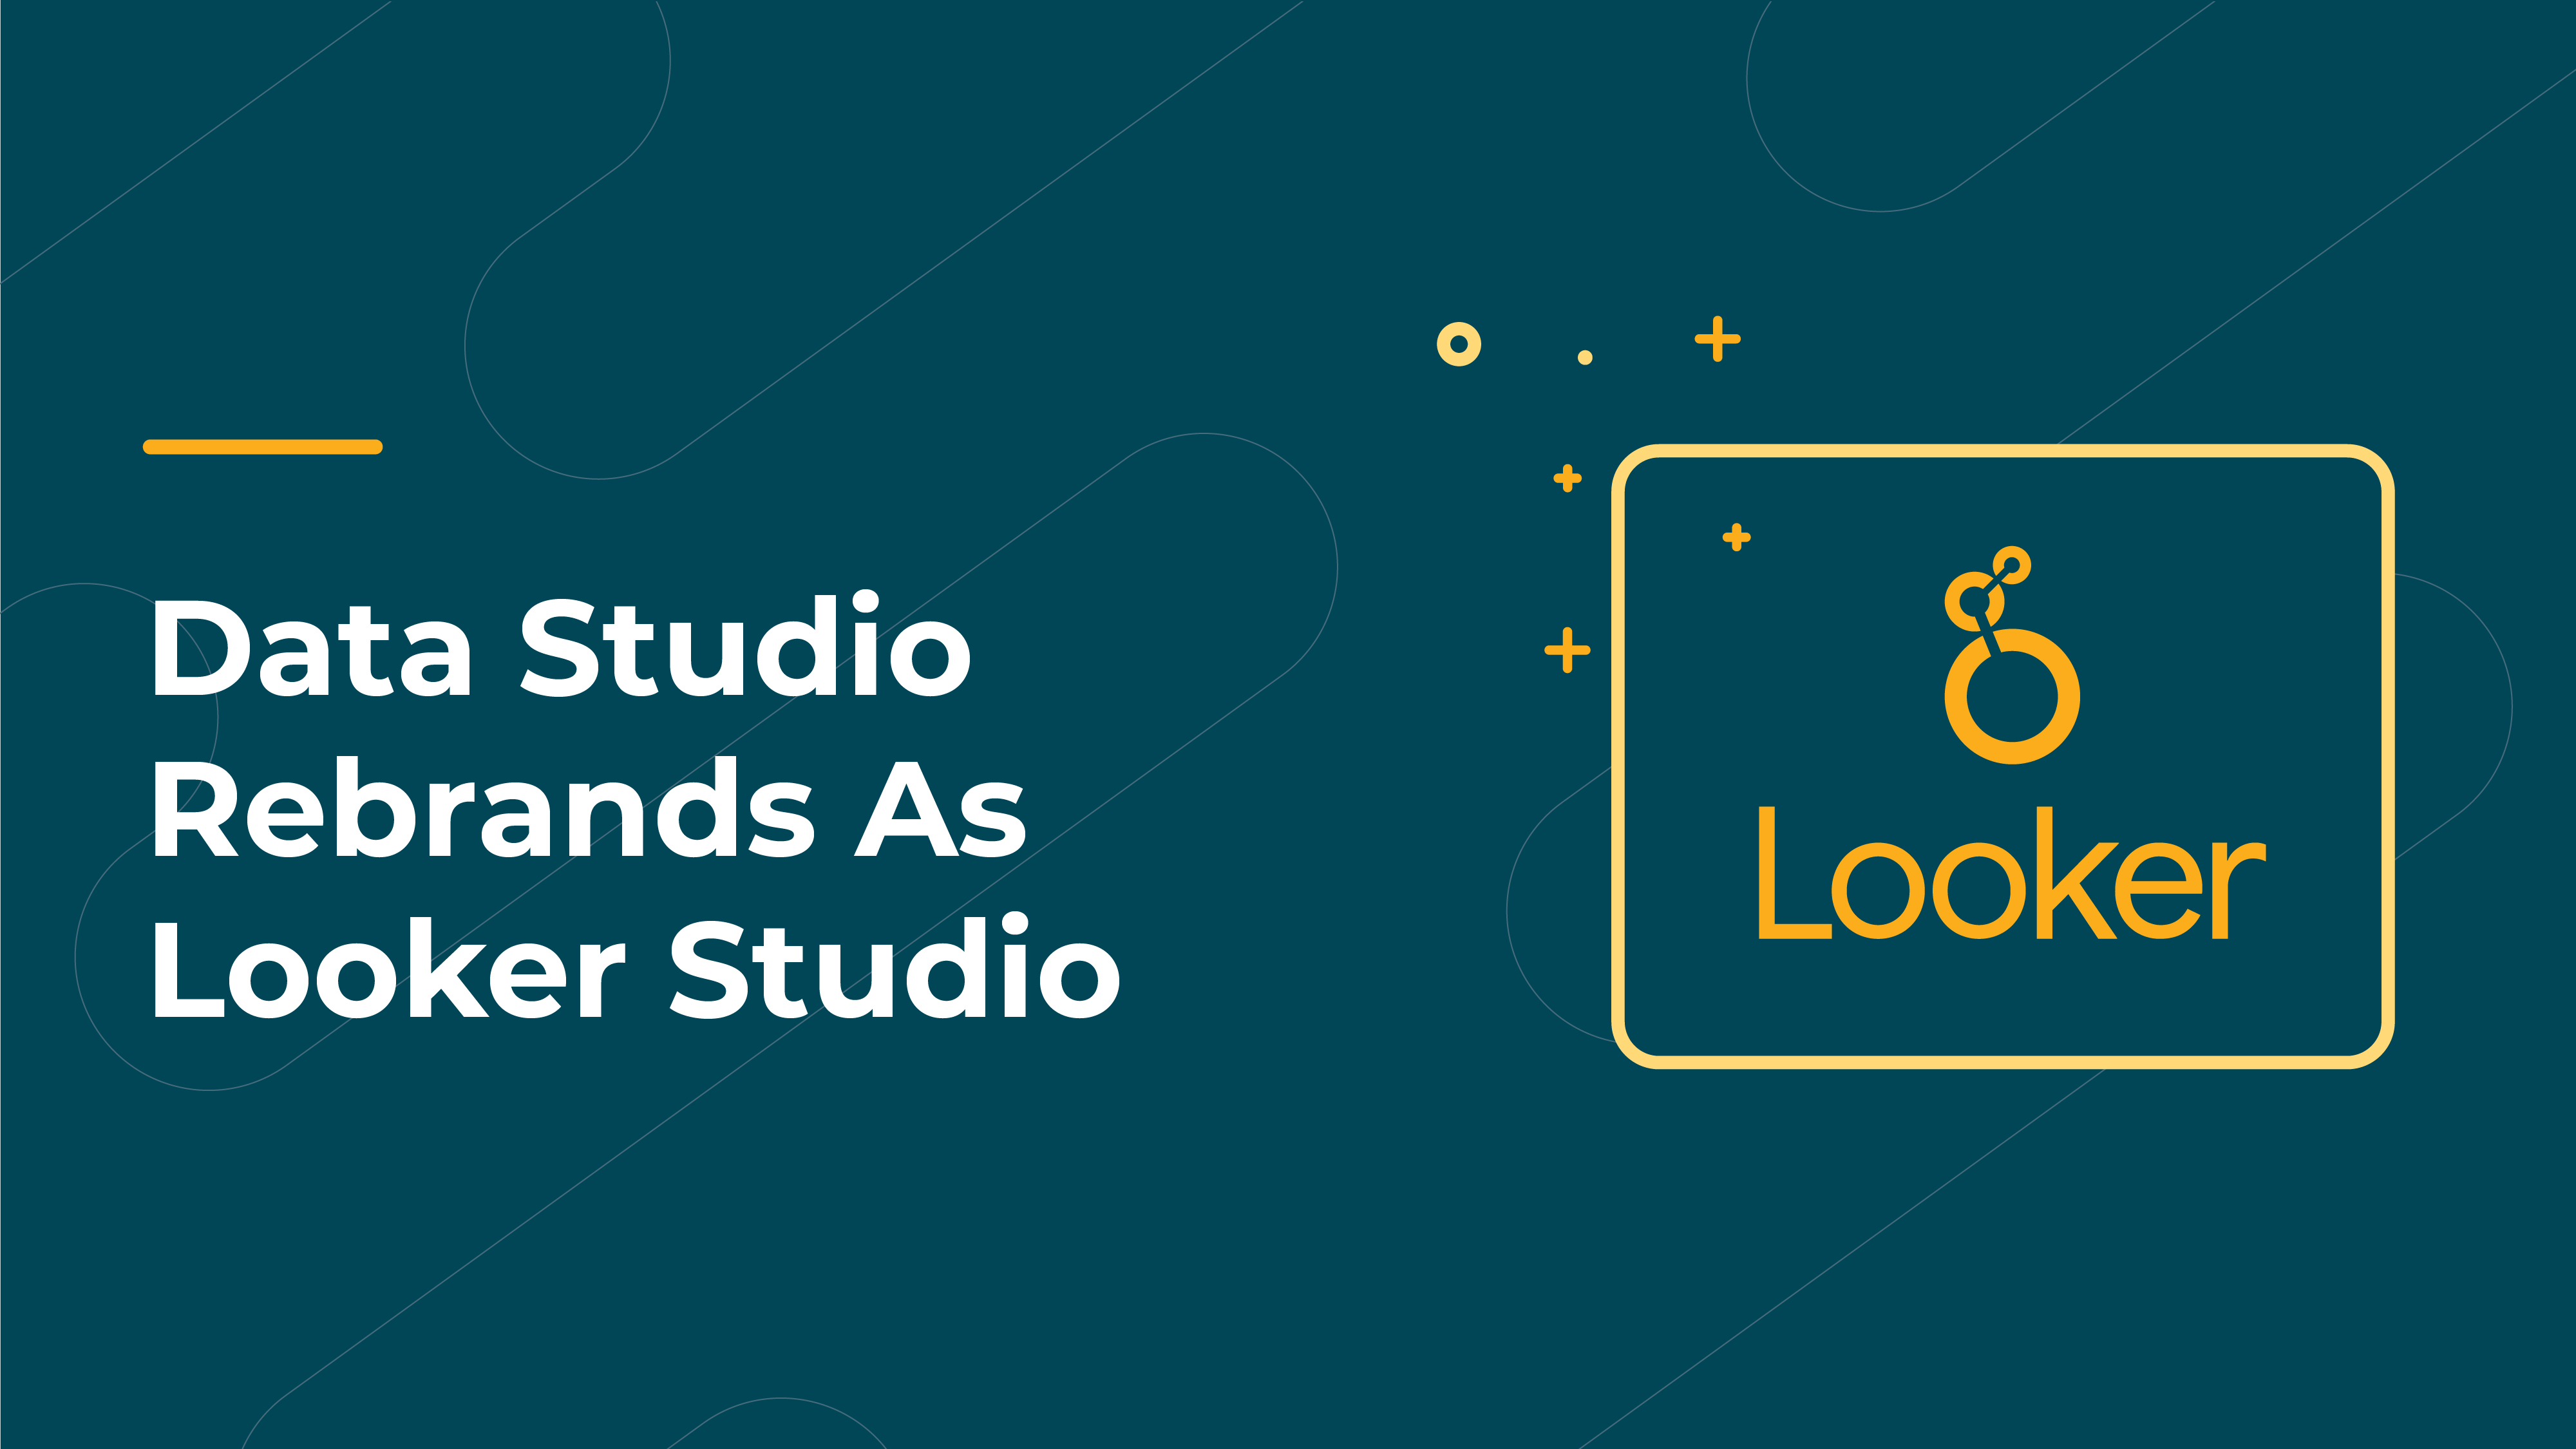 Data Studio Rebrands As Looker Studio